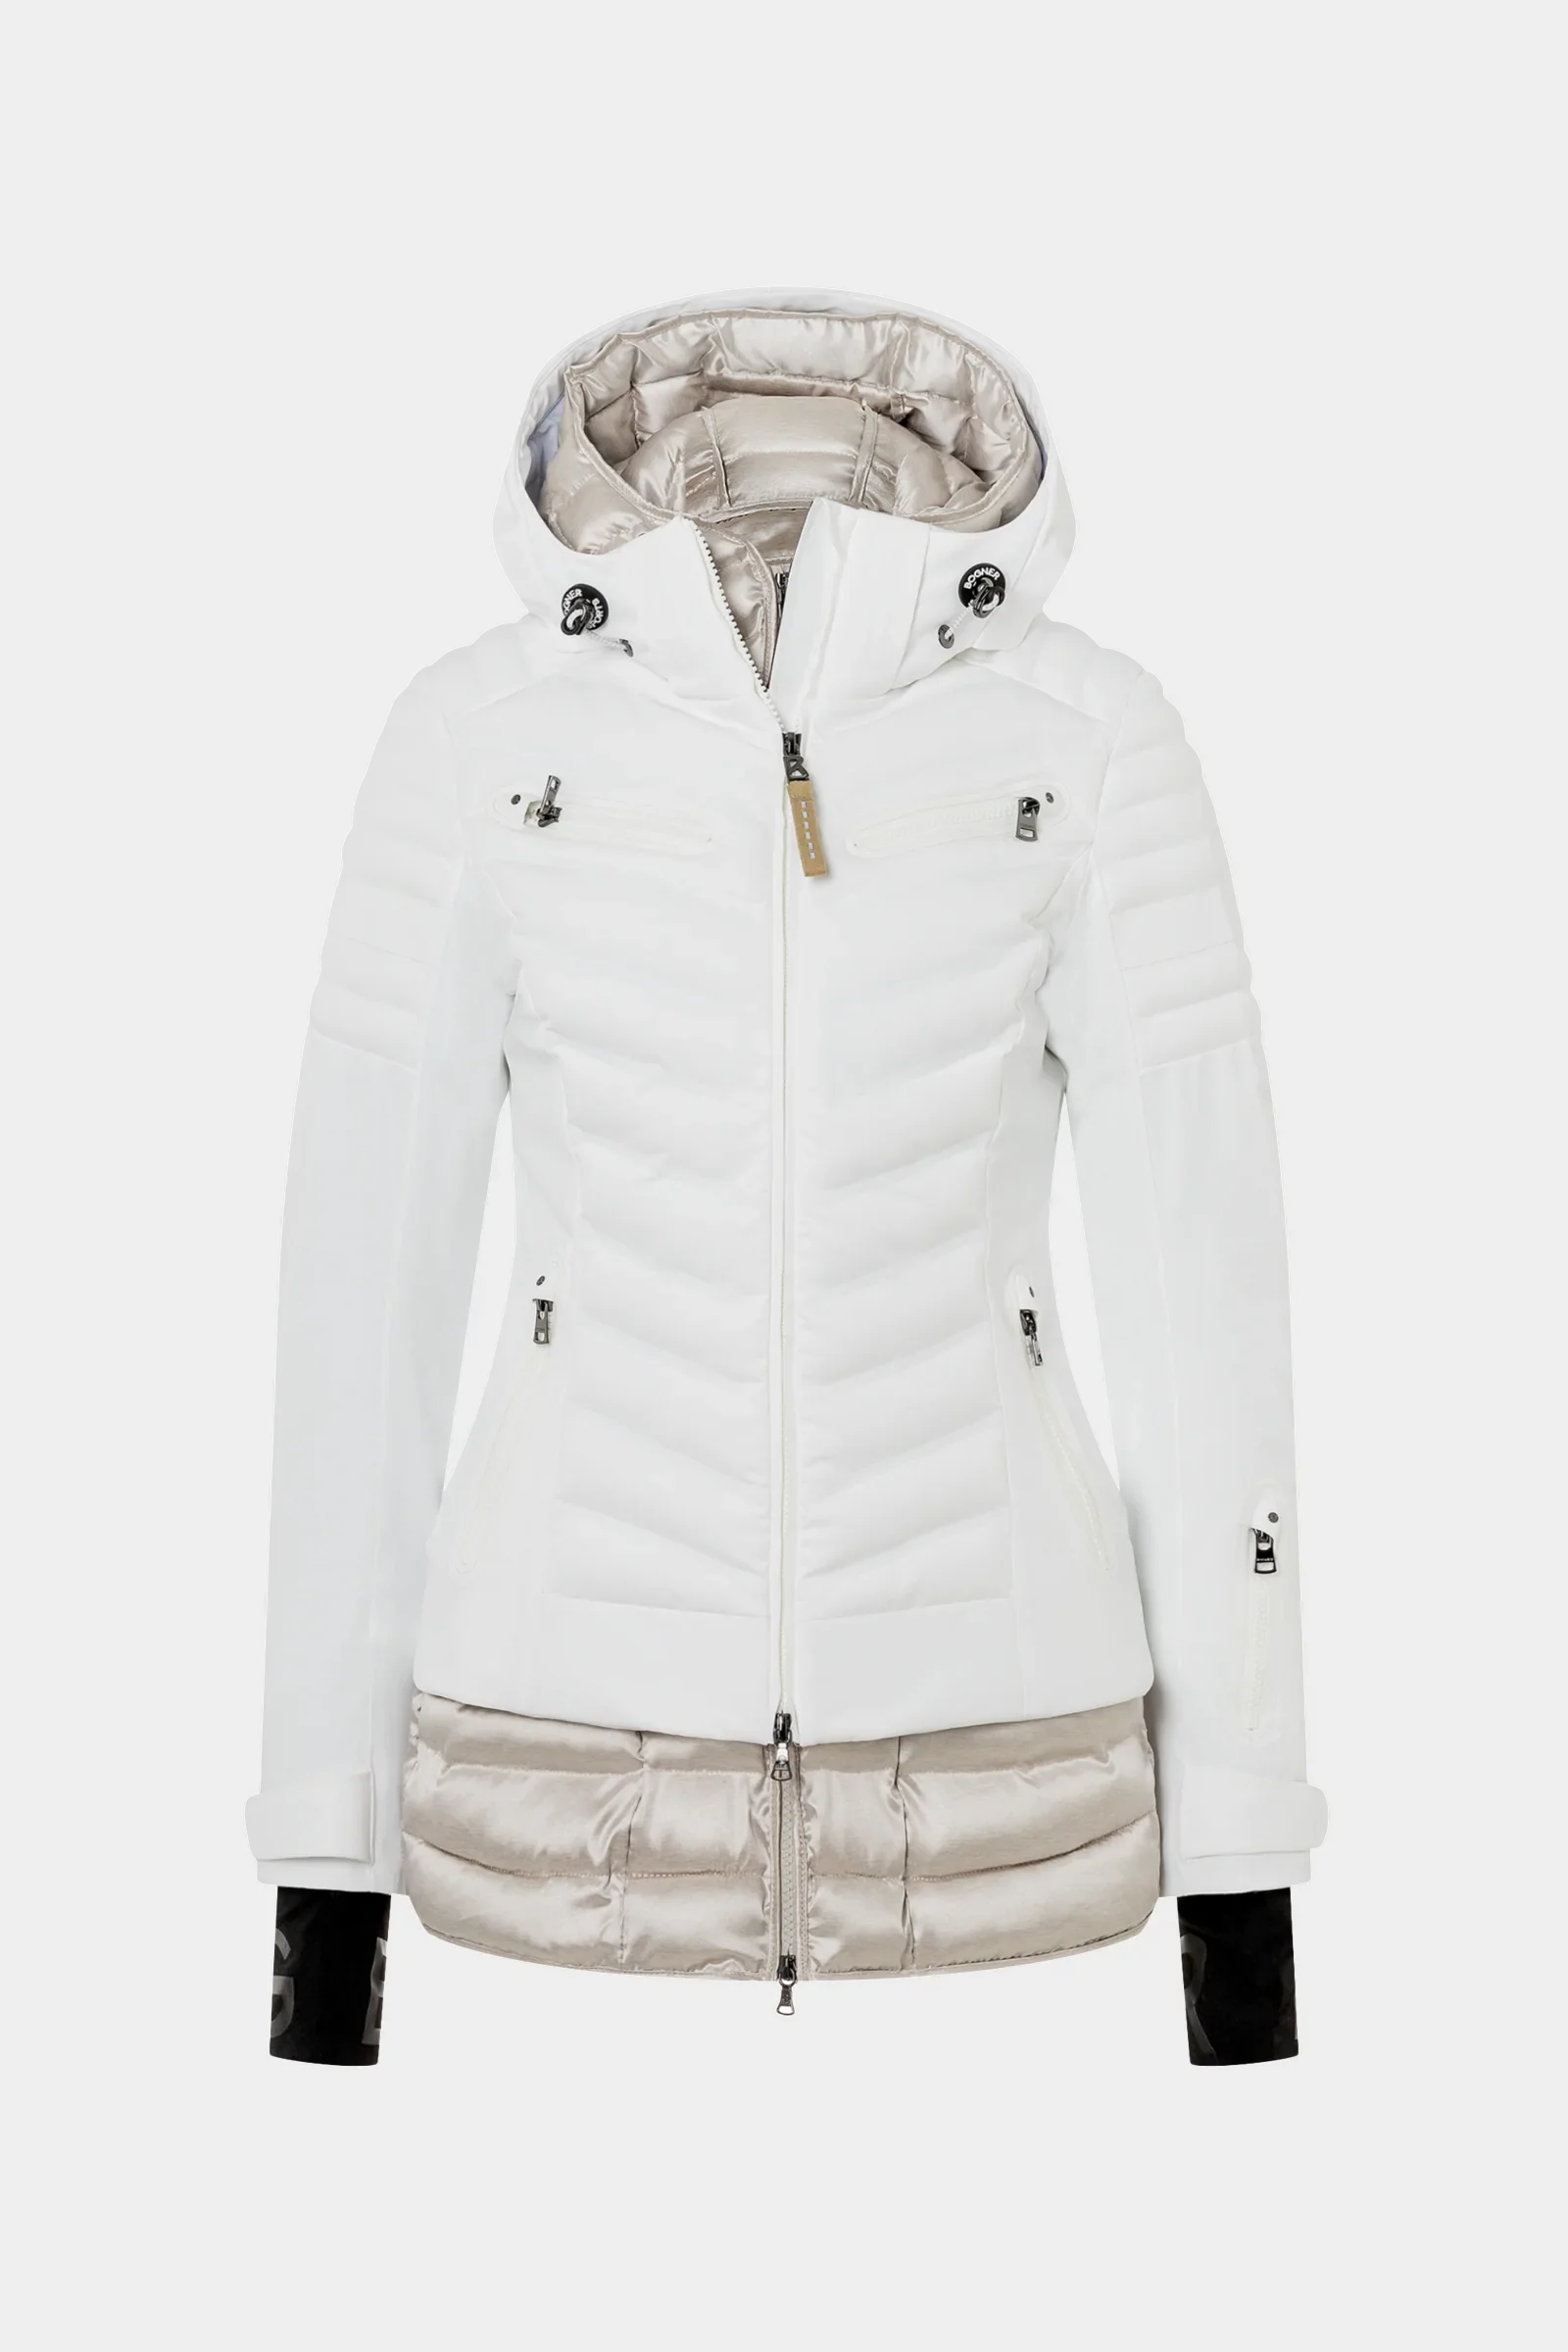 Bogner Elly-T Insulated Ski Jacket (Women's) | Peter Glenn